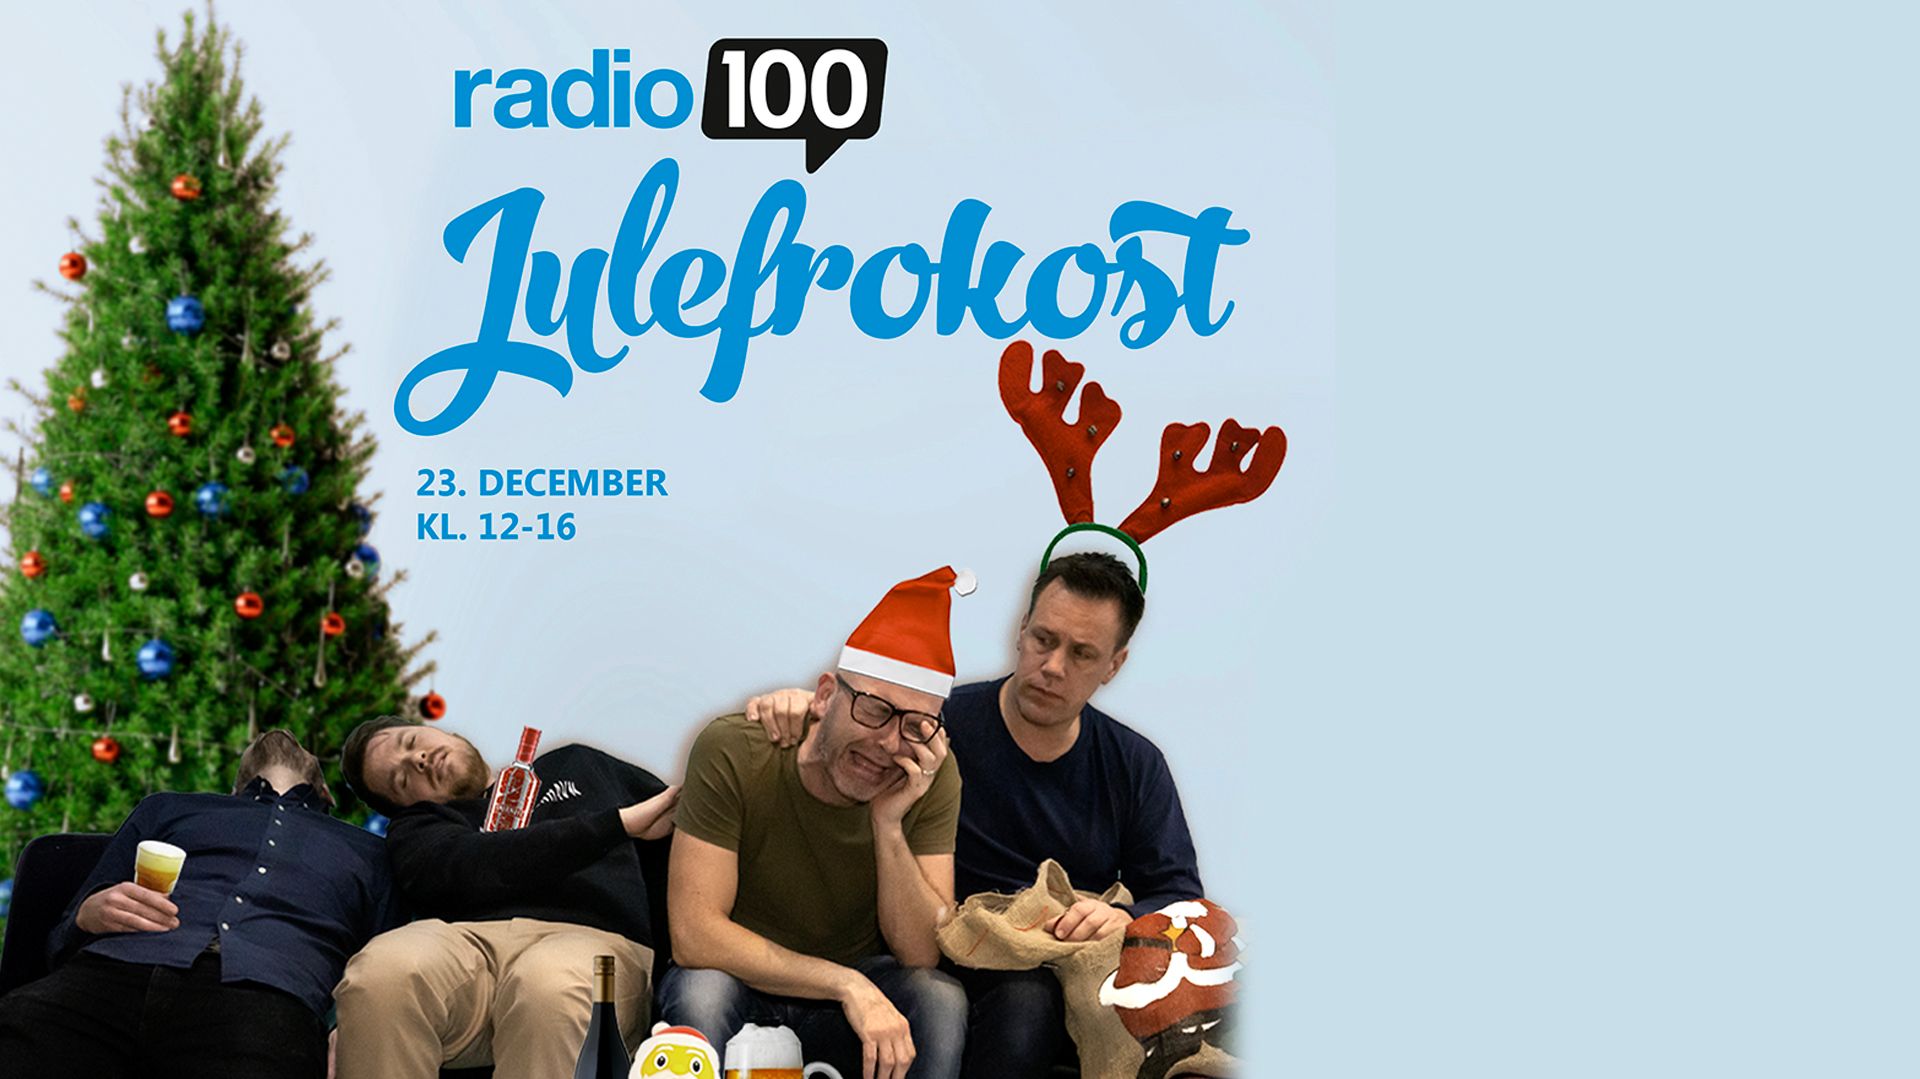 auktion Væk hjørne Radio 100 Julefrokost – live i radioen